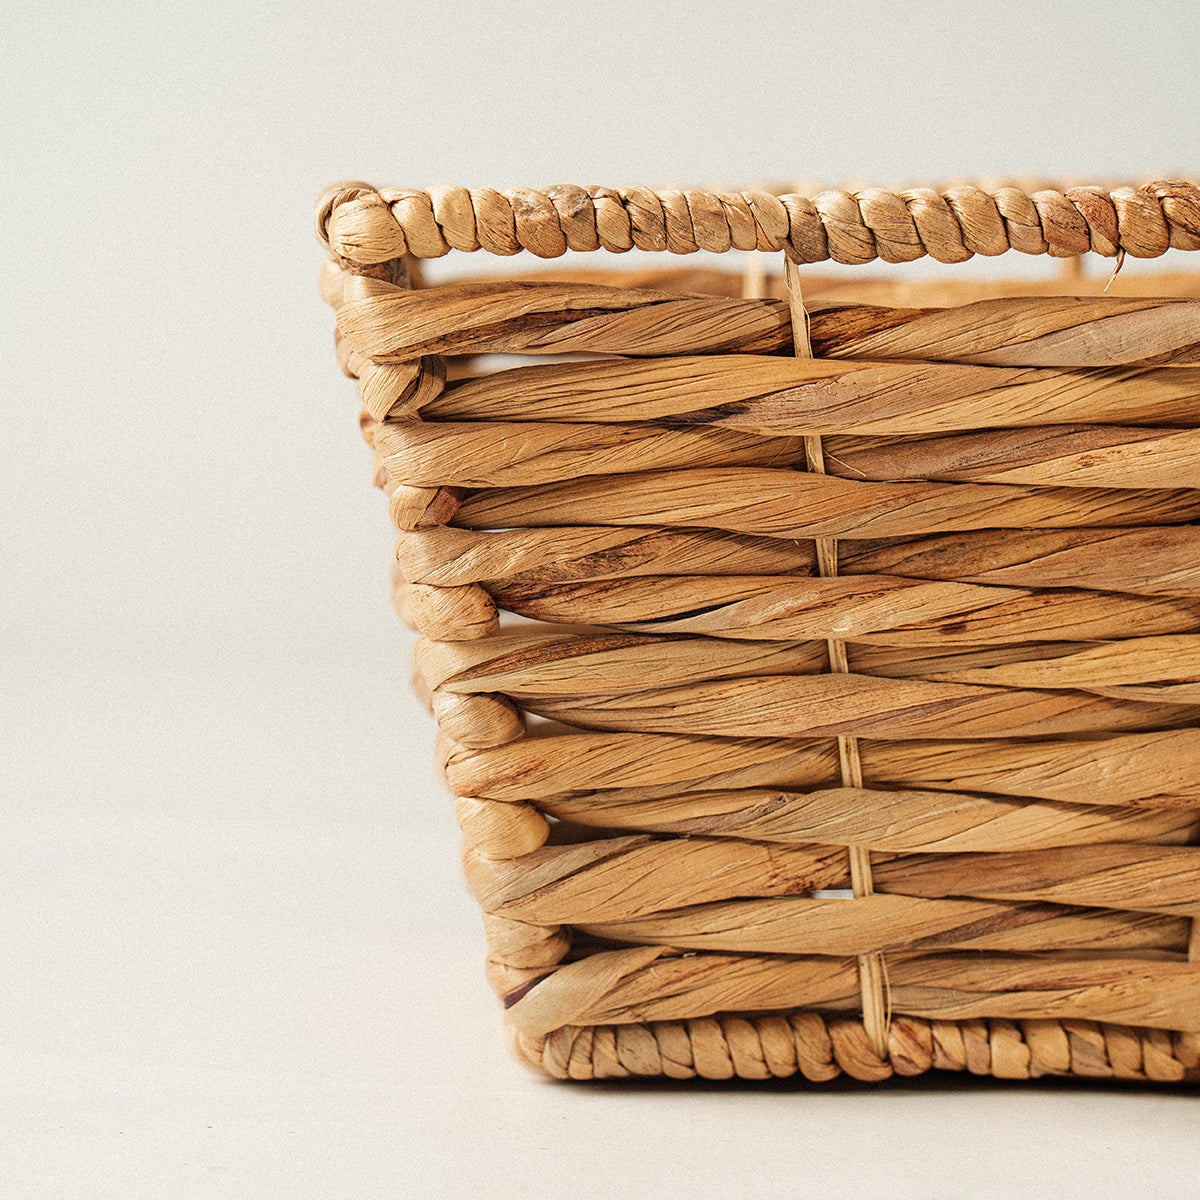 water hyacinth wicker basket handles set of 4